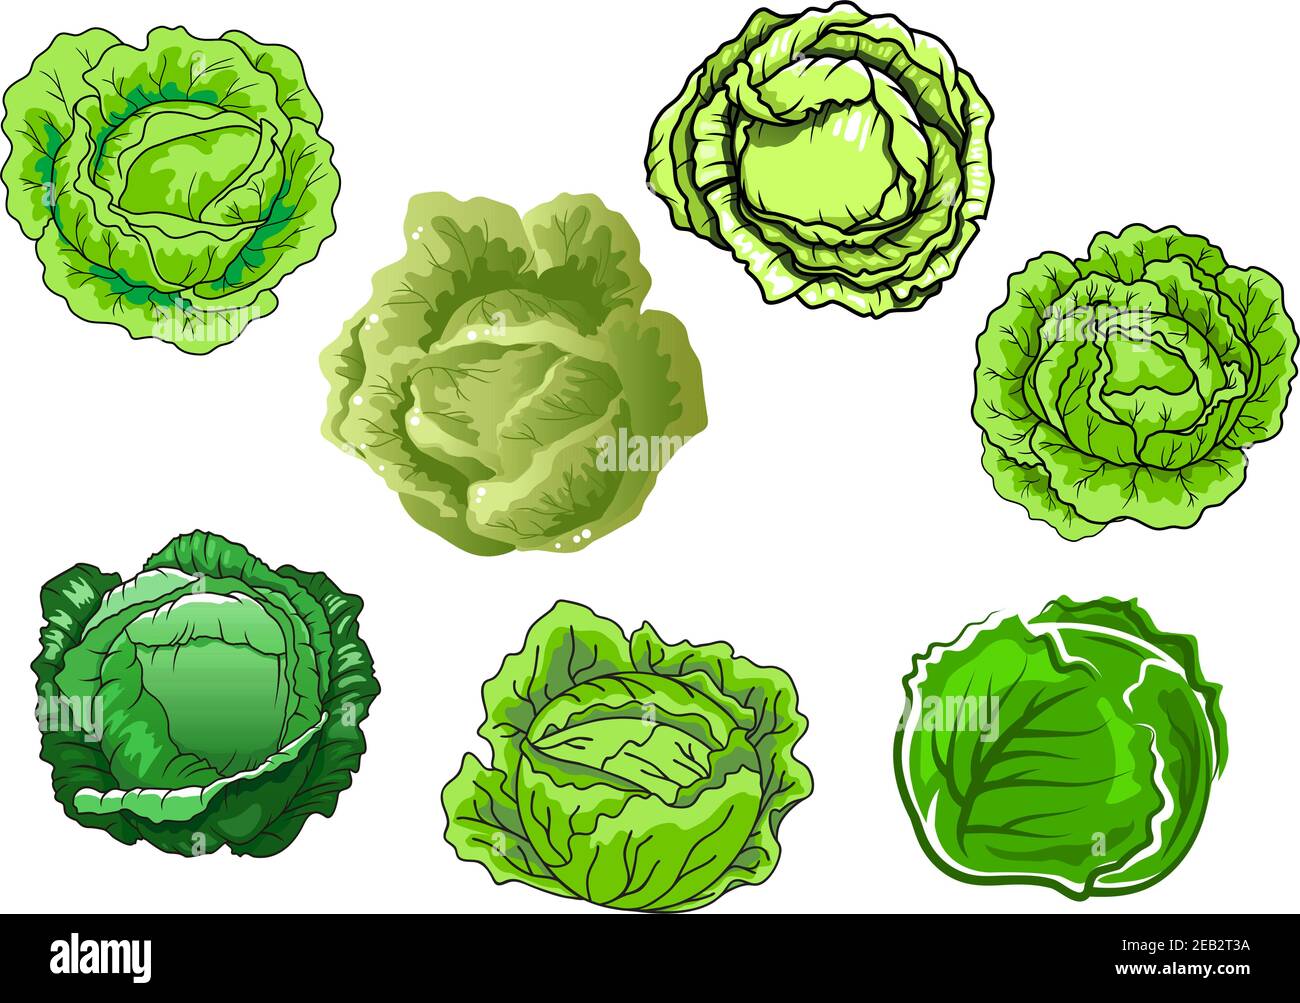 Frisches Kohlgemüse mit saftig grünen Blättern isoliert auf weißem Hintergrund, für die Landwirtschaft oder vegetarische Ernährung Konzept Design Stock Vektor